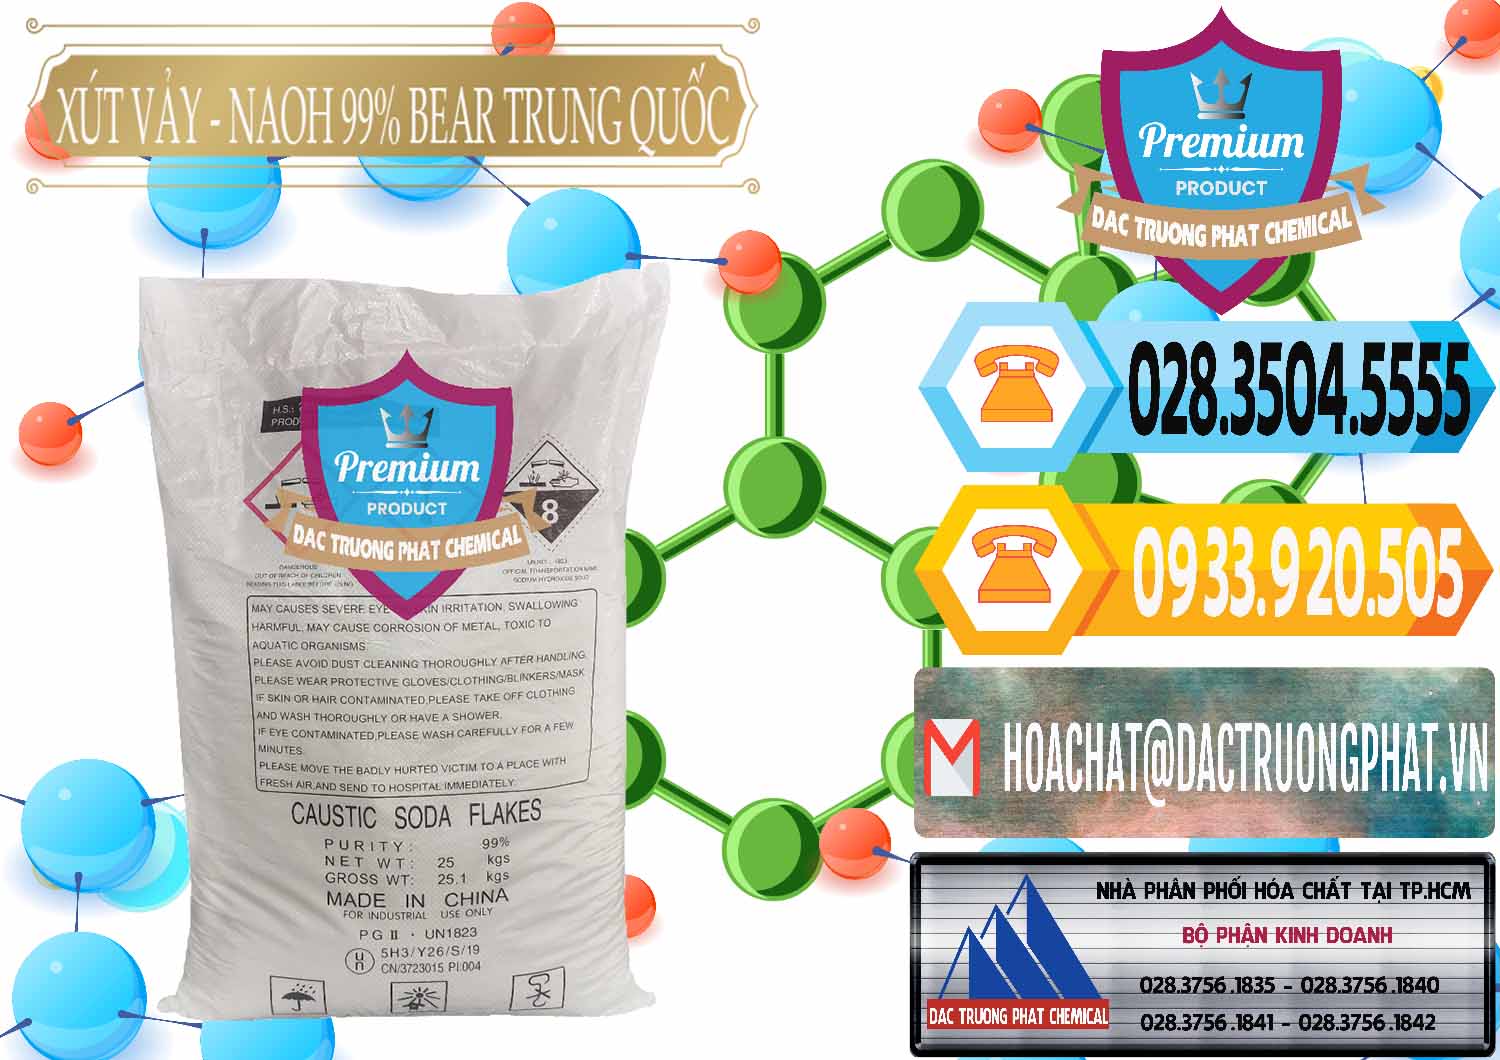 Đơn vị chuyên nhập khẩu - bán Xút Vảy - NaOH Vảy 99% Bear Sơn Đông Trung Quốc China - 0175 - Đơn vị phân phối _ cung cấp hóa chất tại TP.HCM - hoachattayrua.net